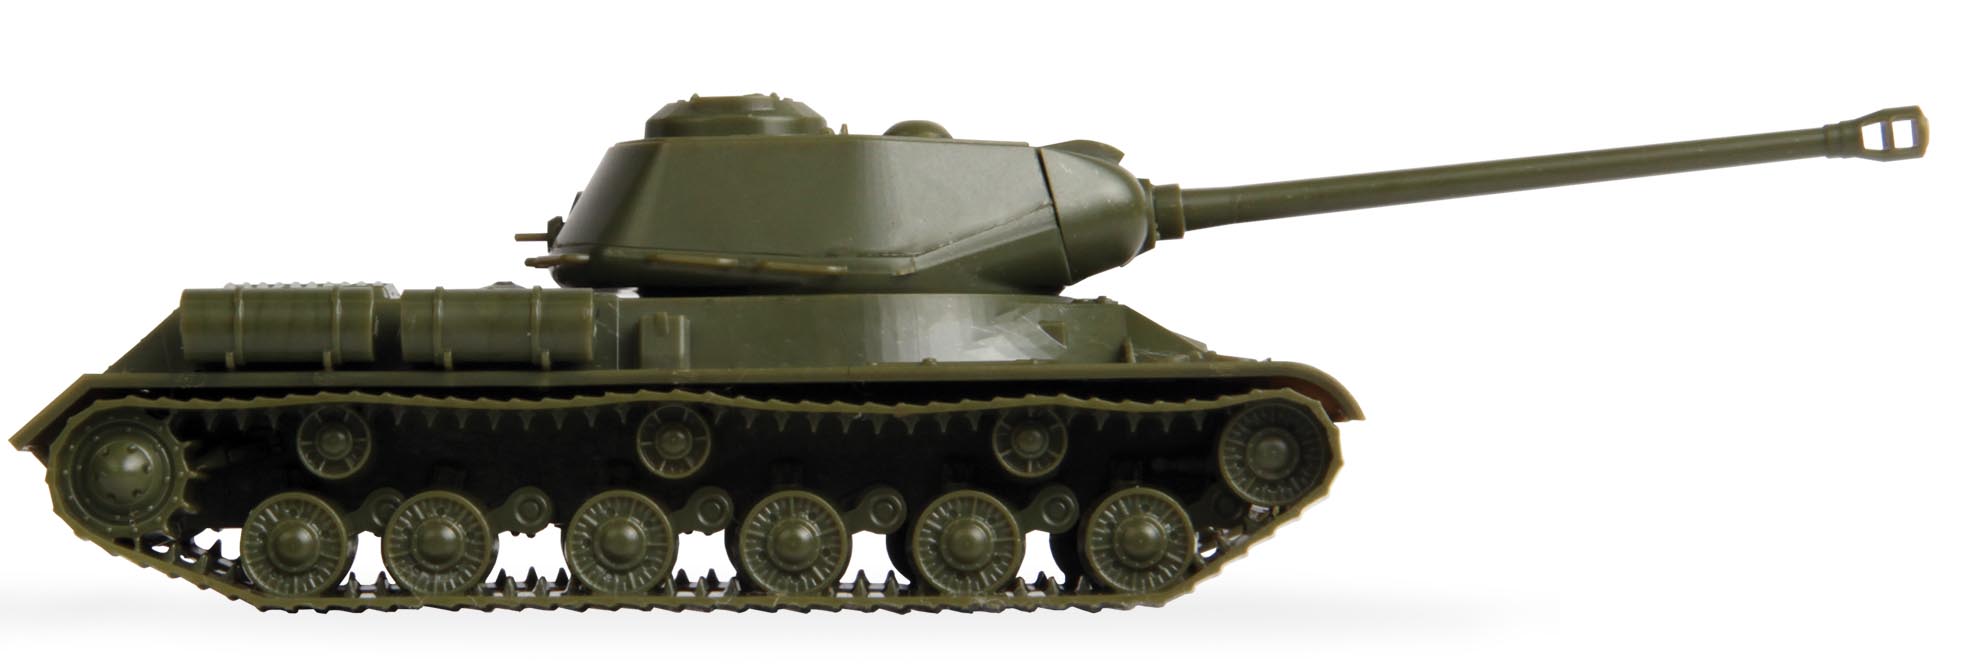 Бок ис. Модель танка ИС 2 звезда. "Zvezda" Советский тяжелый танк ИС-2 1/100. ИС-3 тяжёлый танк звезда 1/100. ИС 2 профиль.